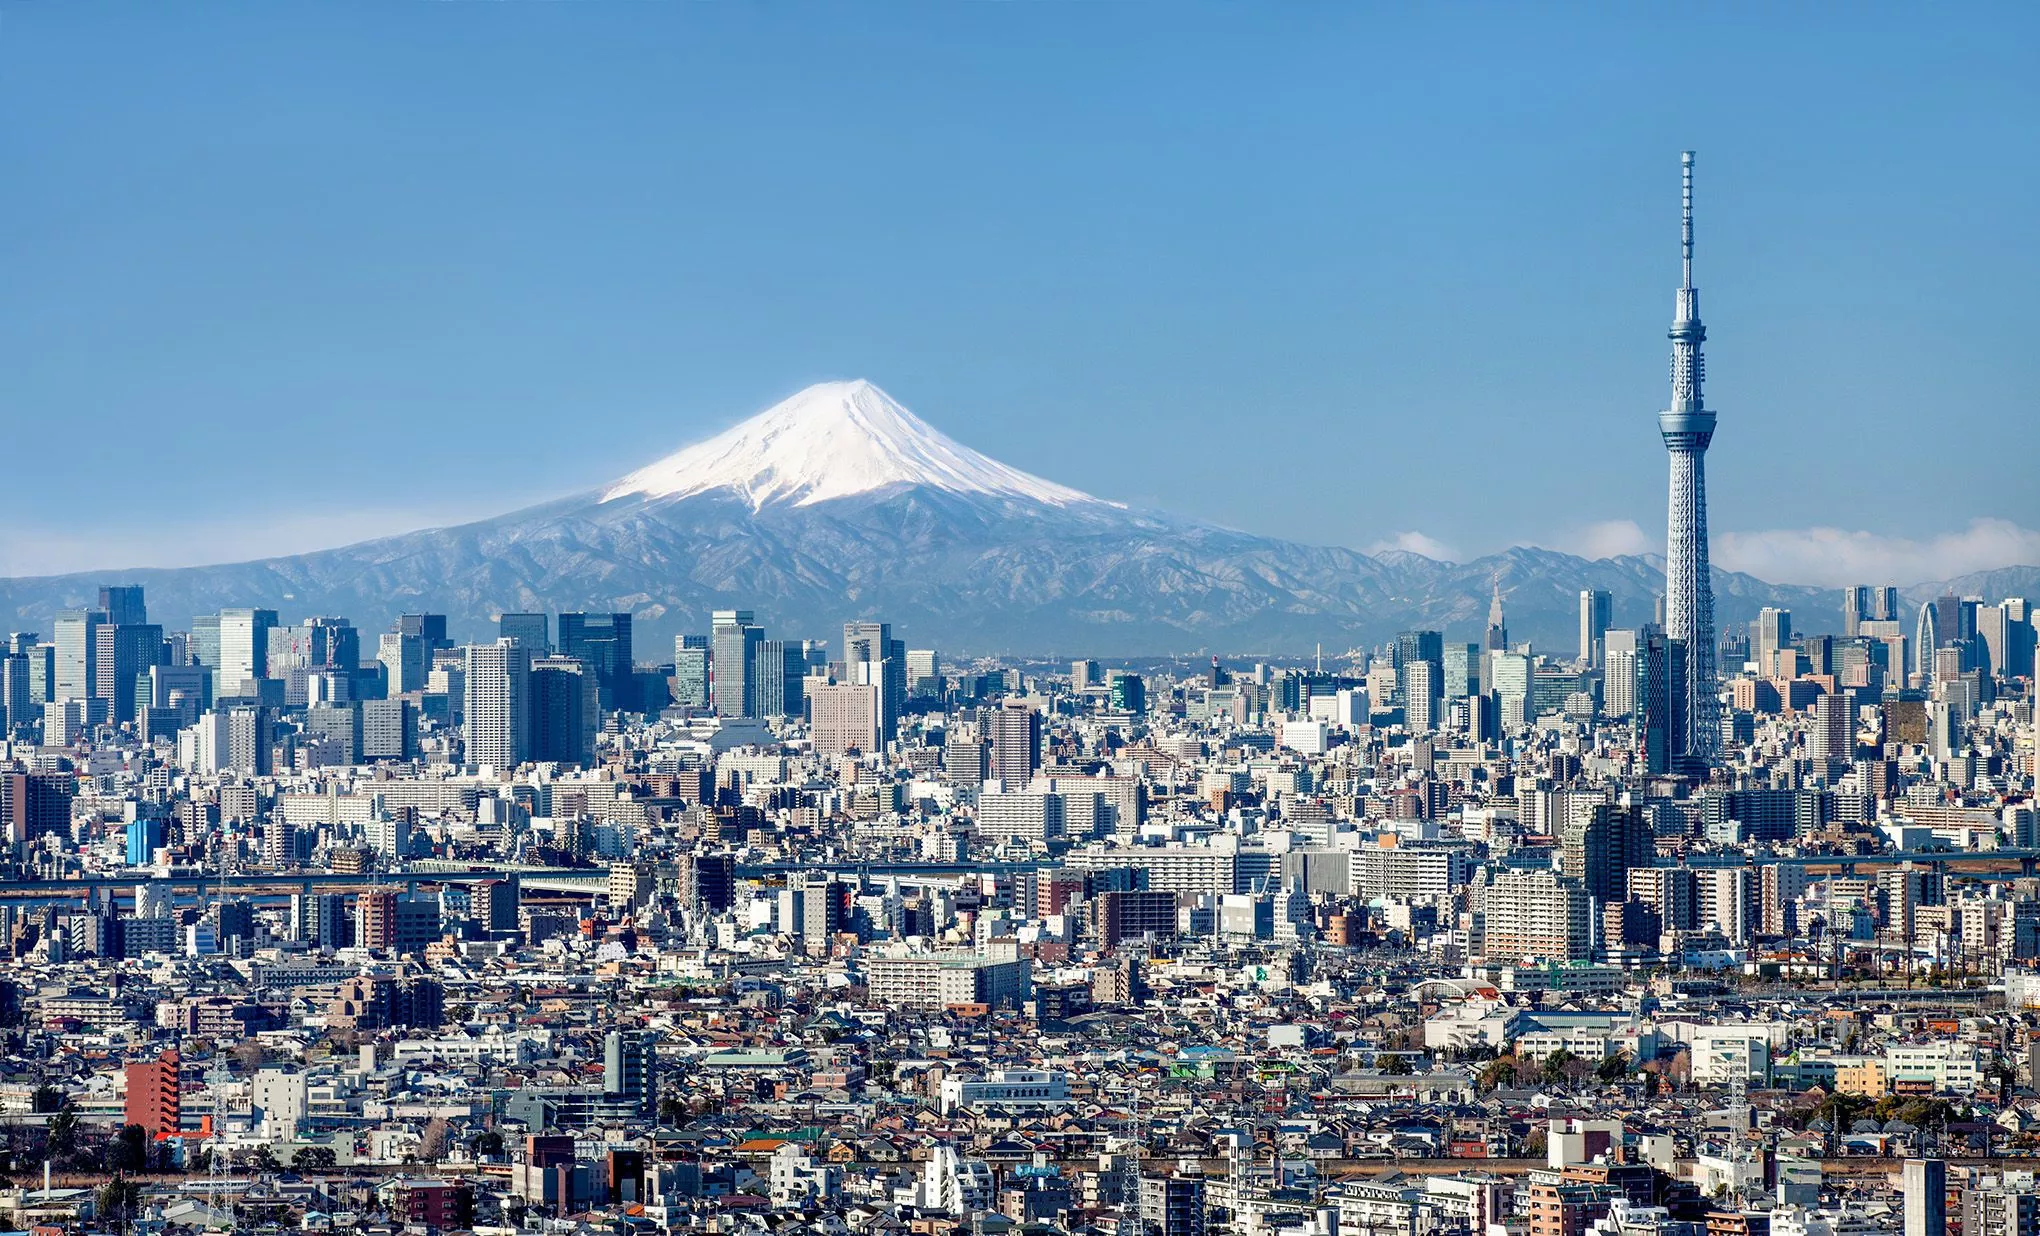 Der Tokyo Skytree (rechts) ist mit 634 Metern das zweithöchste Gebäude der Welt. Bei gutem Wetter sieht man aus der Hauptstadt bis zum schneebedeckten Gipfel des 3776 Meter hohen Fuji, Japans höchstem Berg